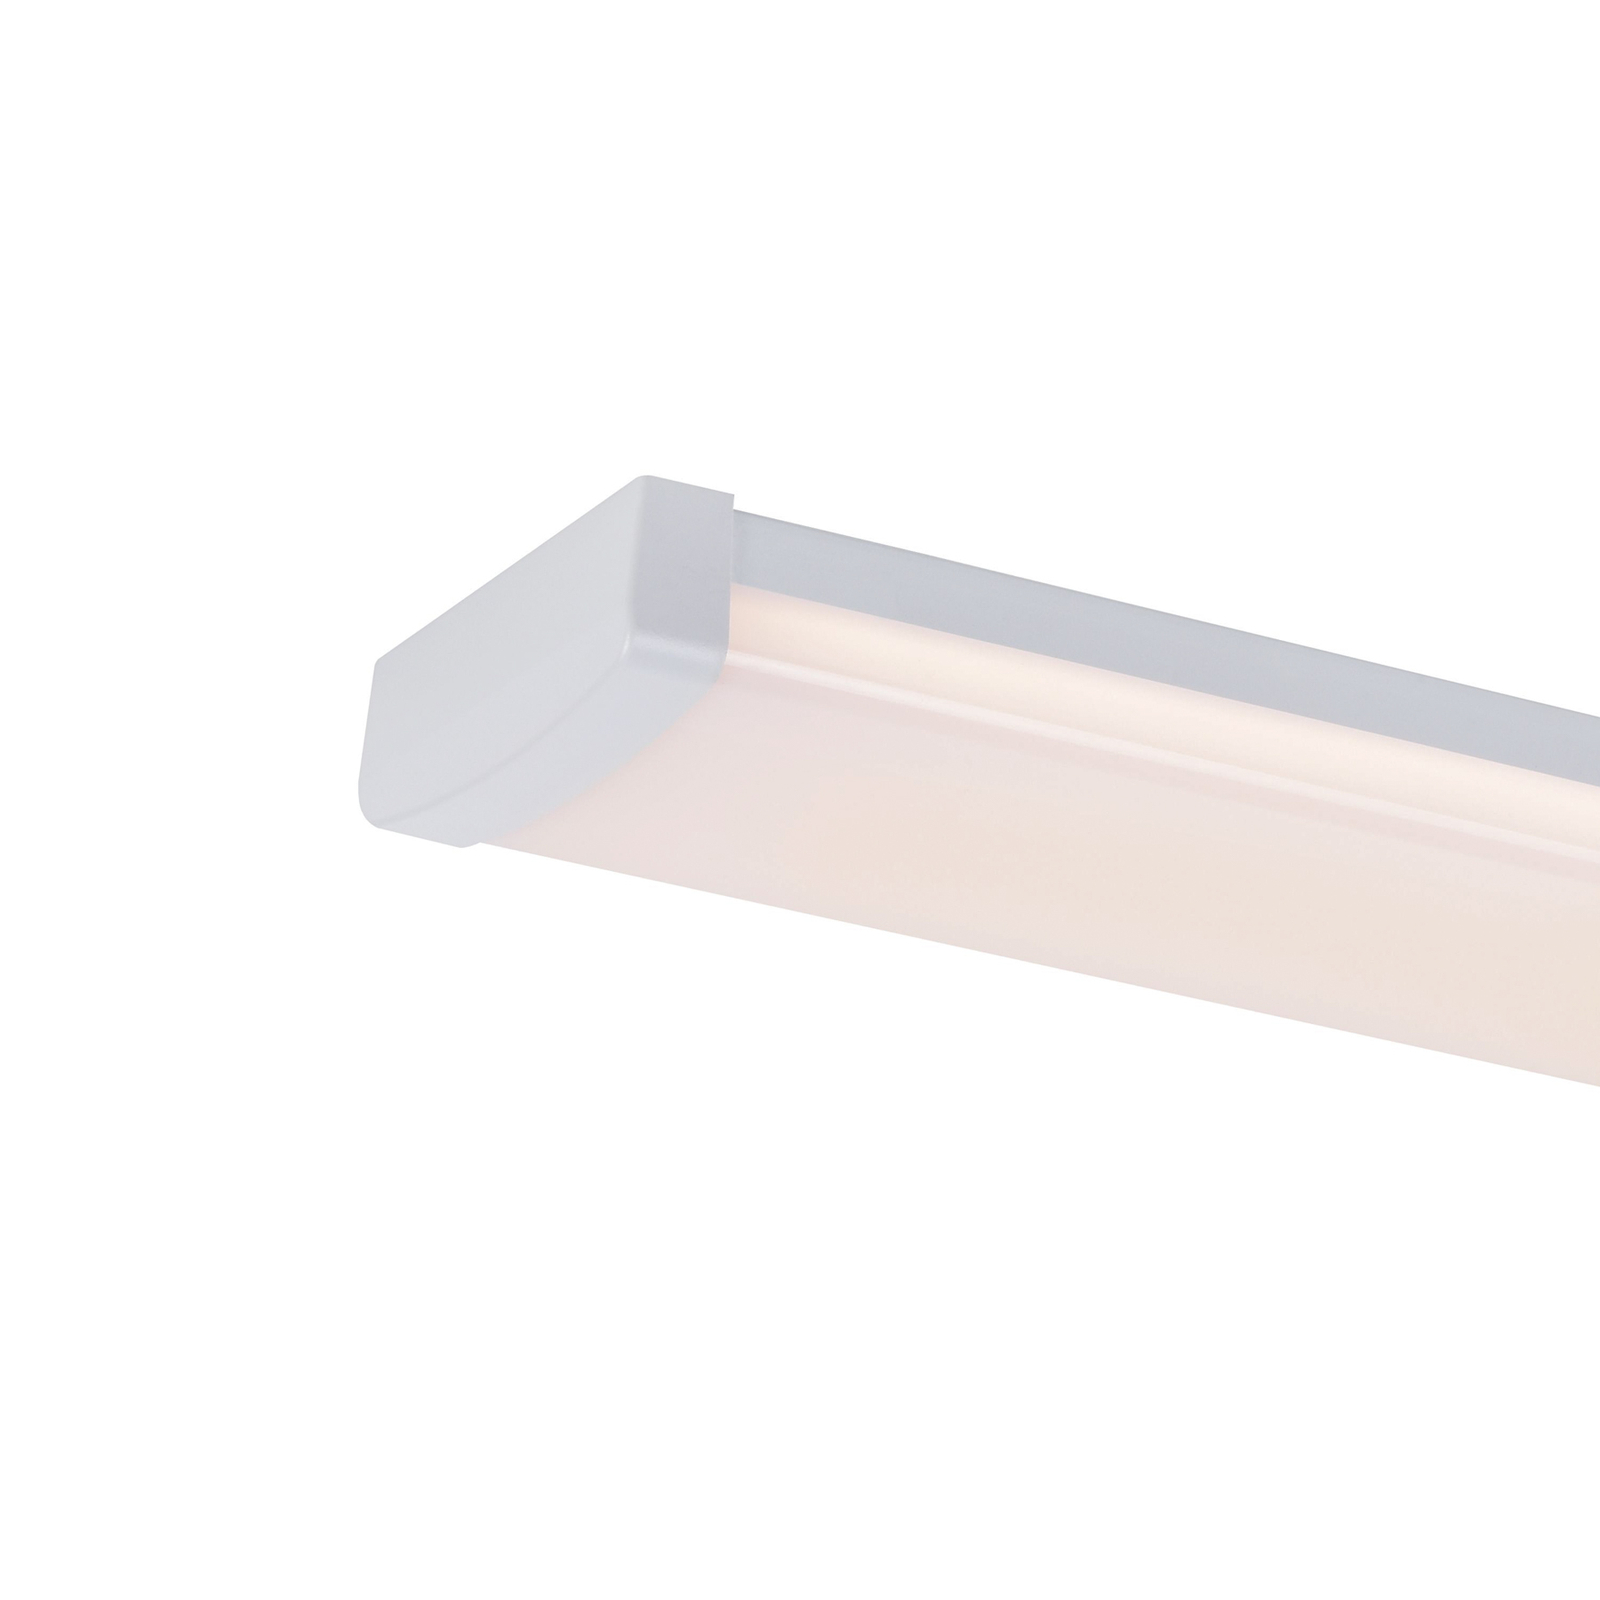 Wilmington LED batten light, length 90.5 cm, white, plastic